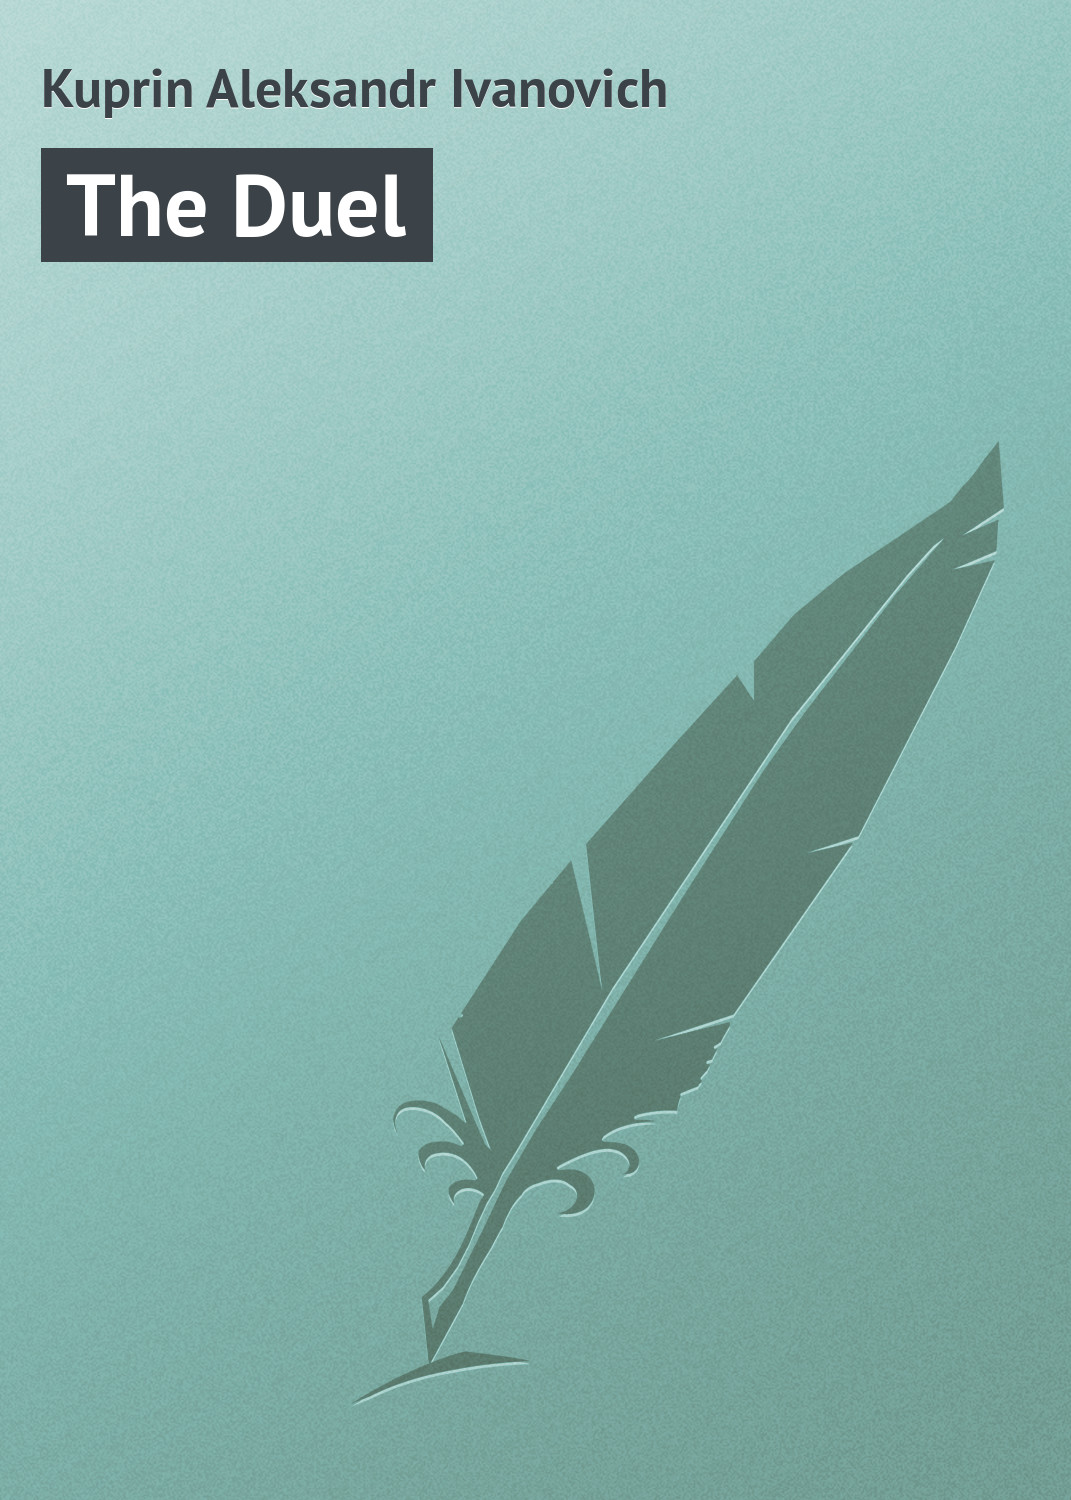 Книга The Duel из серии , созданная Aleksandr Kuprin, может относится к жанру Русская классика. Стоимость электронной книги The Duel с идентификатором 23159747 составляет 5.99 руб.